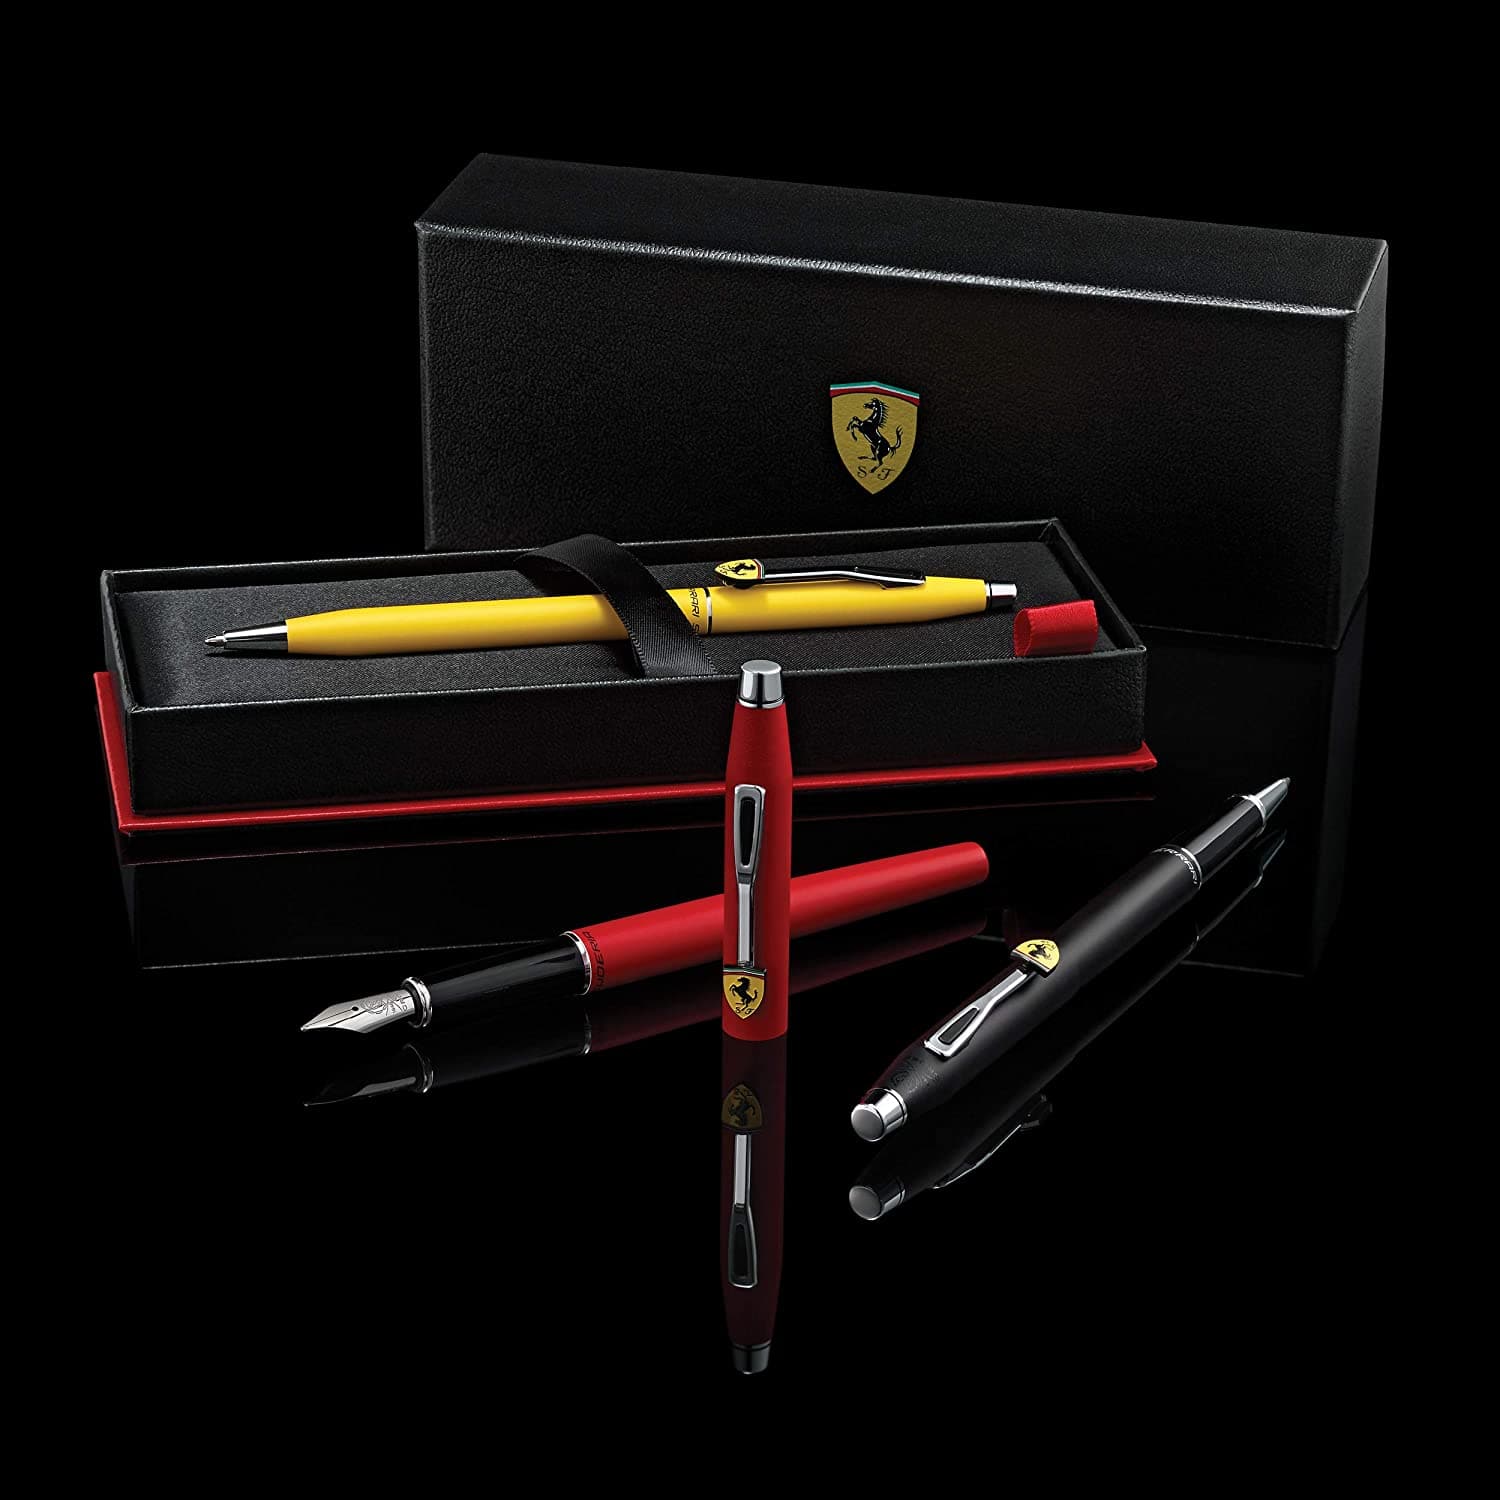 Cross Classic Century Collection For Scuderia Ferrari Matte Modena Yellow Lacquer Ballpoint Pen - FR0082-118